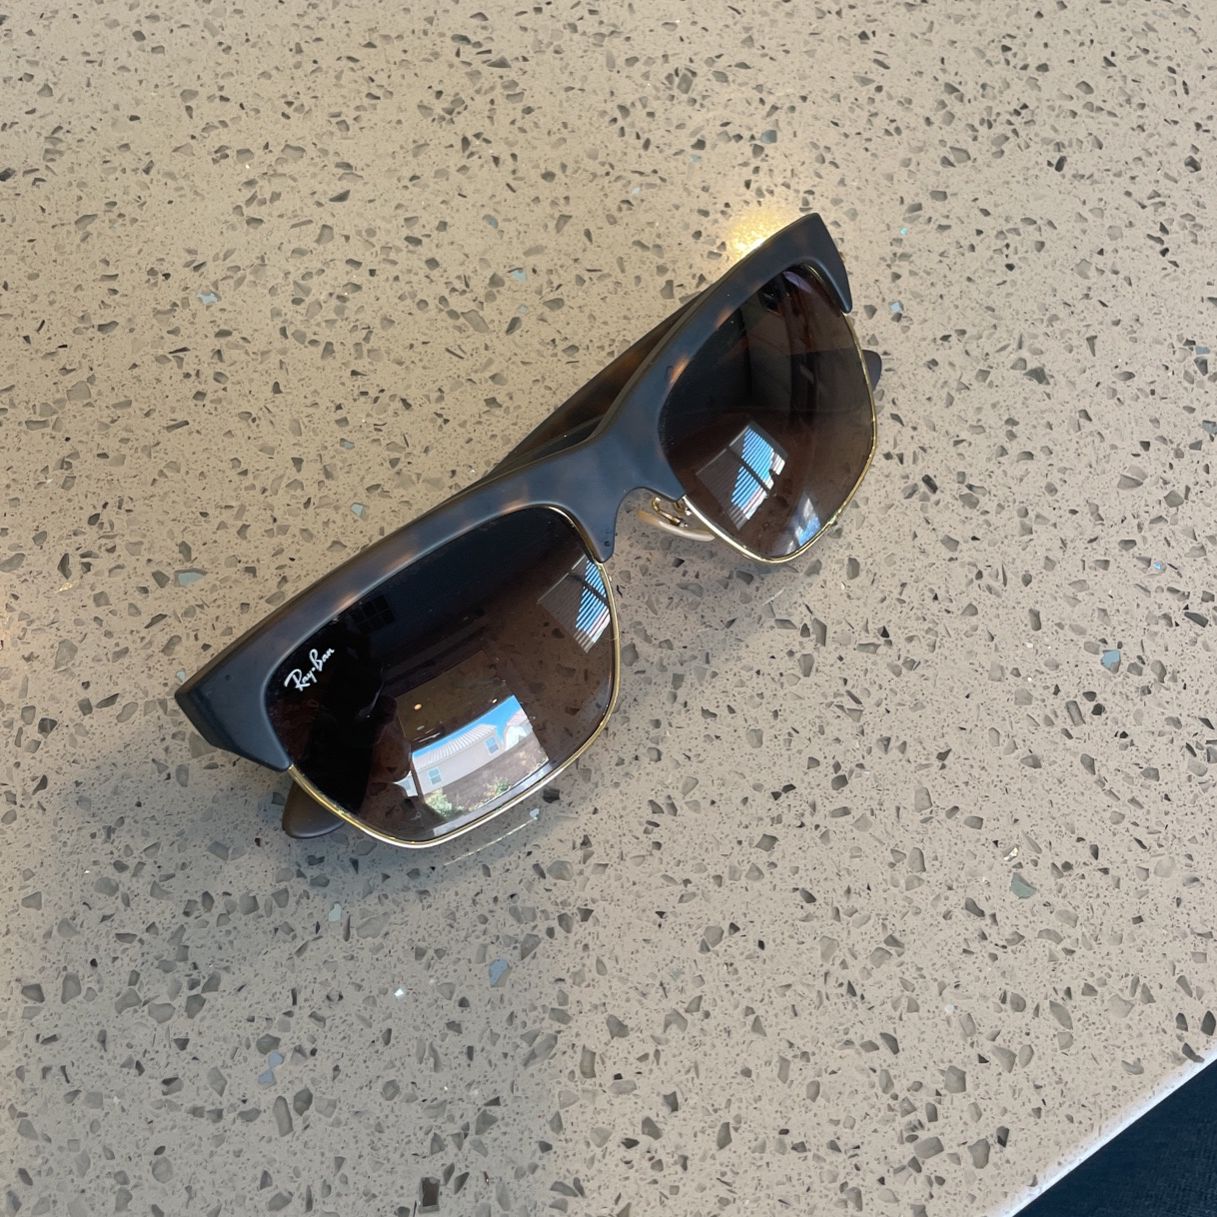 Designer Sunglasses Ray Ban Chanel Gucci Retro Superfuture Etc $100- $400  Per Pair for Sale in Pompano Beach, FL - OfferUp